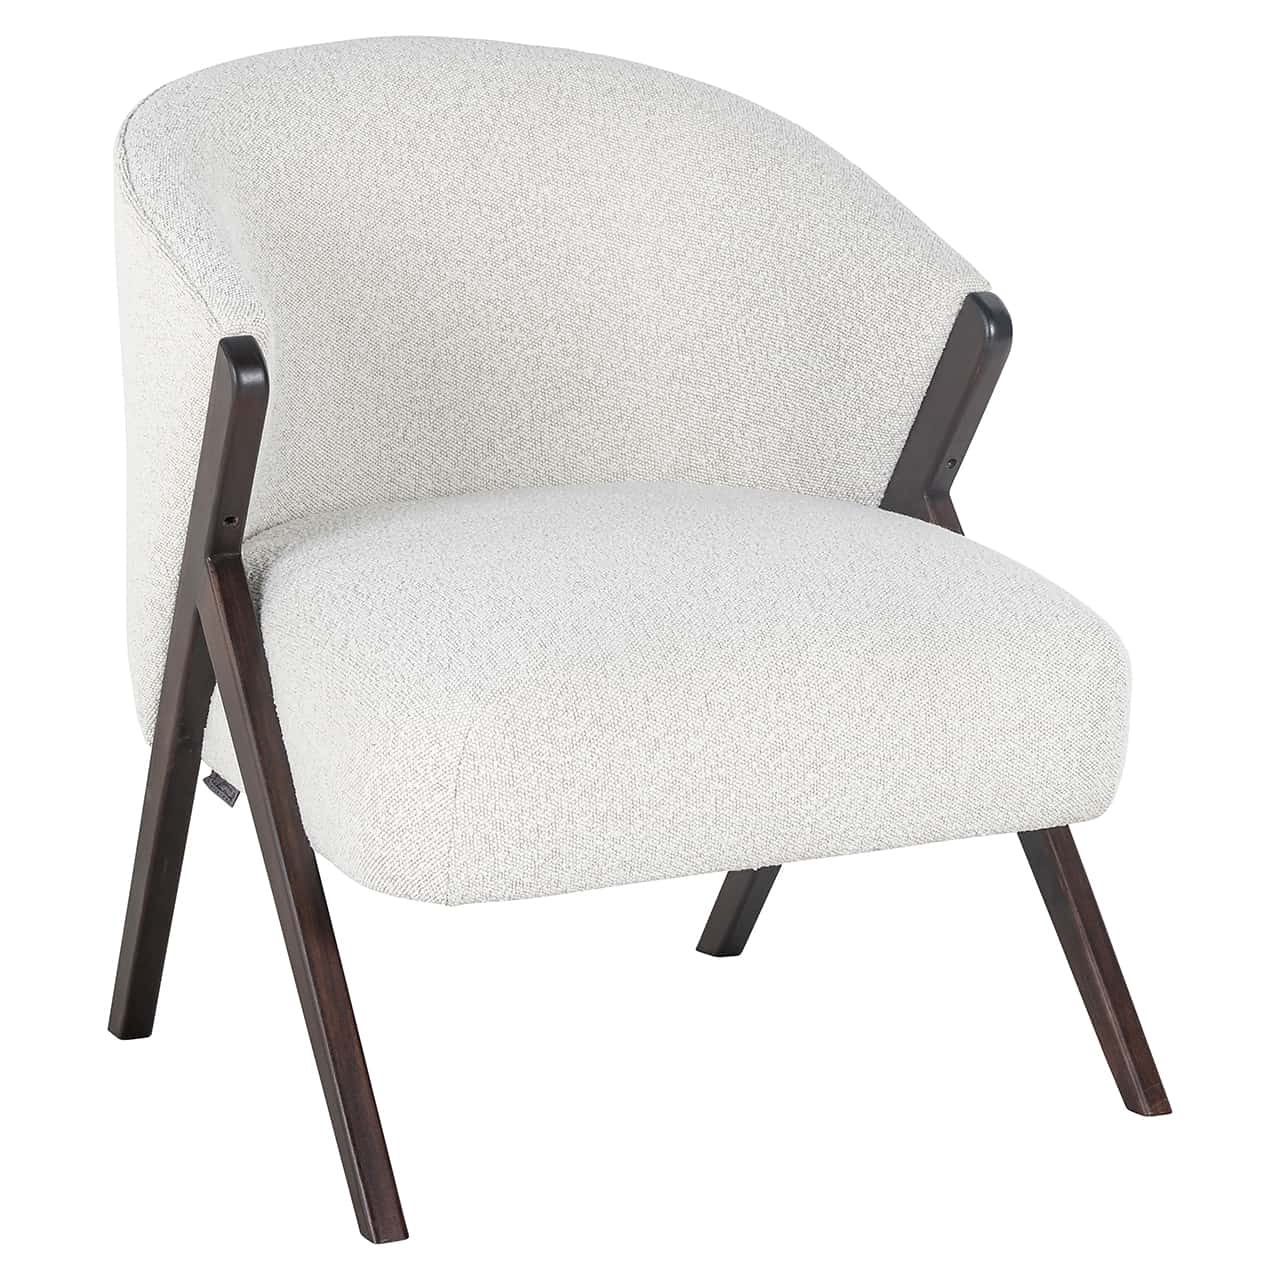 Moderner Sessel mit an der Außenseite angebrachten, schräg gestellten Beinen aus dunklem Buchenholz, breite, gepolsterte  Sitzfläche und runde, etwas nach oben gezogene, auch gepolsterte Lehne; Bezug aus weißem Bouclé.